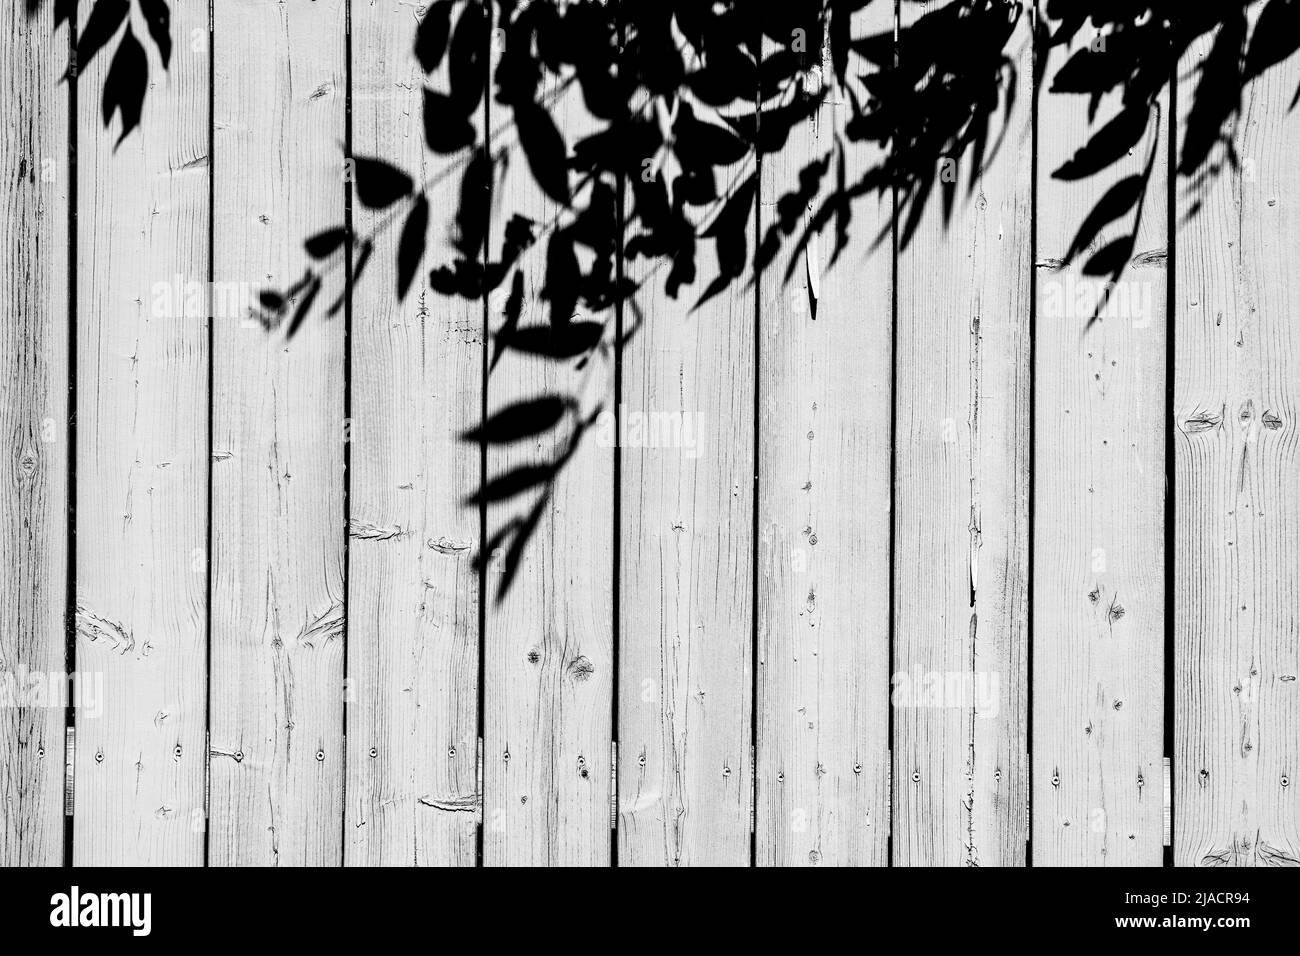 Eine schwarz-weiße Aufnahme der Schatten der Blätter eines Baumes auf einem hölzernen Zaun in einem heißen Sommernachmittag, die an die Nostalgie der Kindheit und des guten alten Tages erinnert Stockfoto